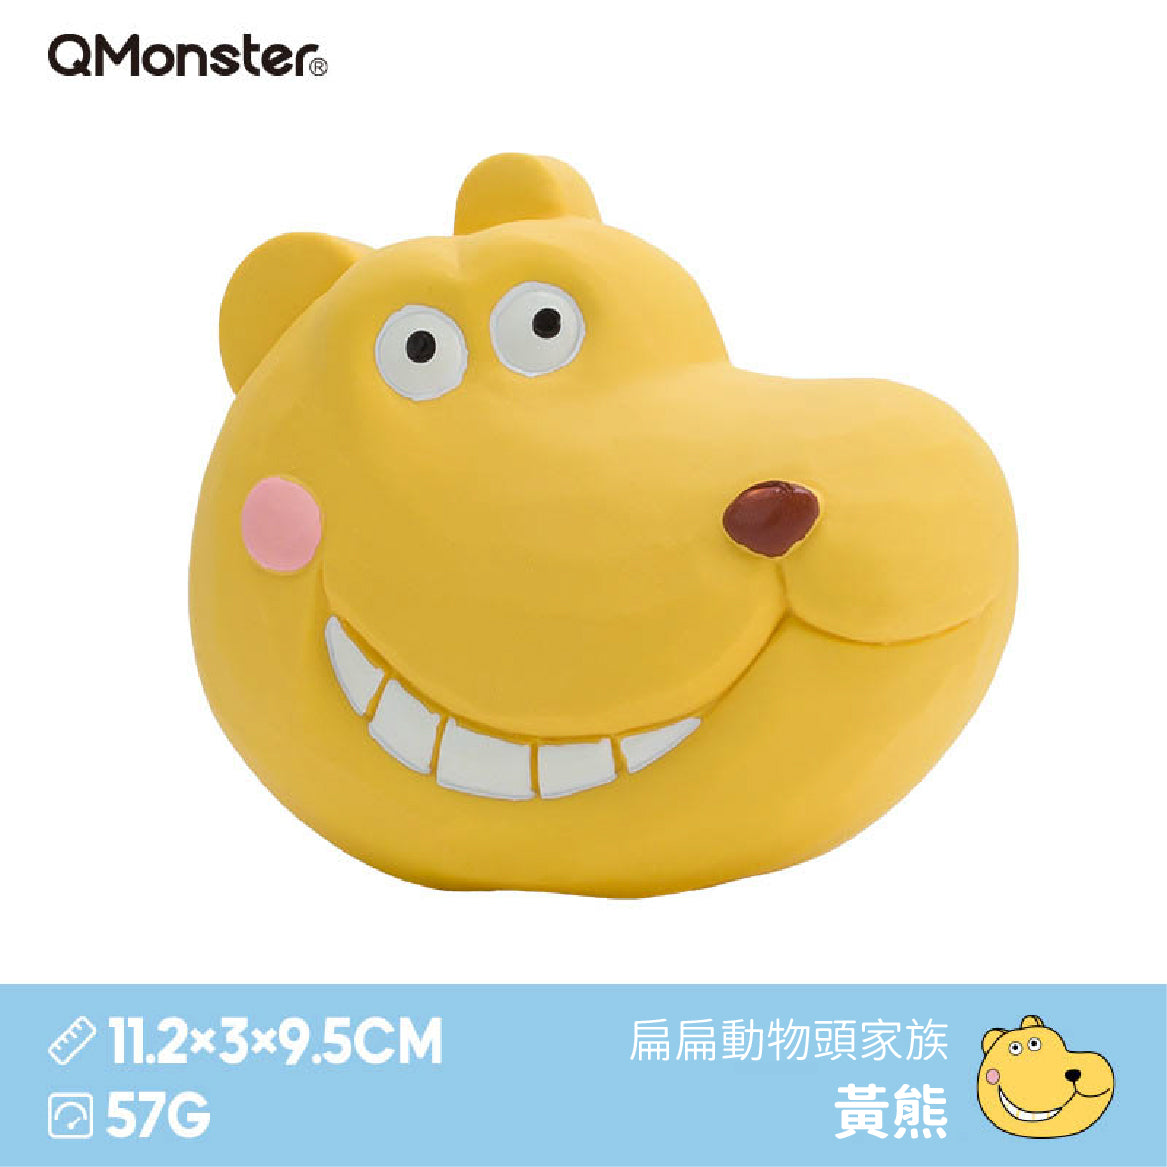 Q-MONSTER 扁扁動物頭家族發聲玩具 寵物乳膠玩具